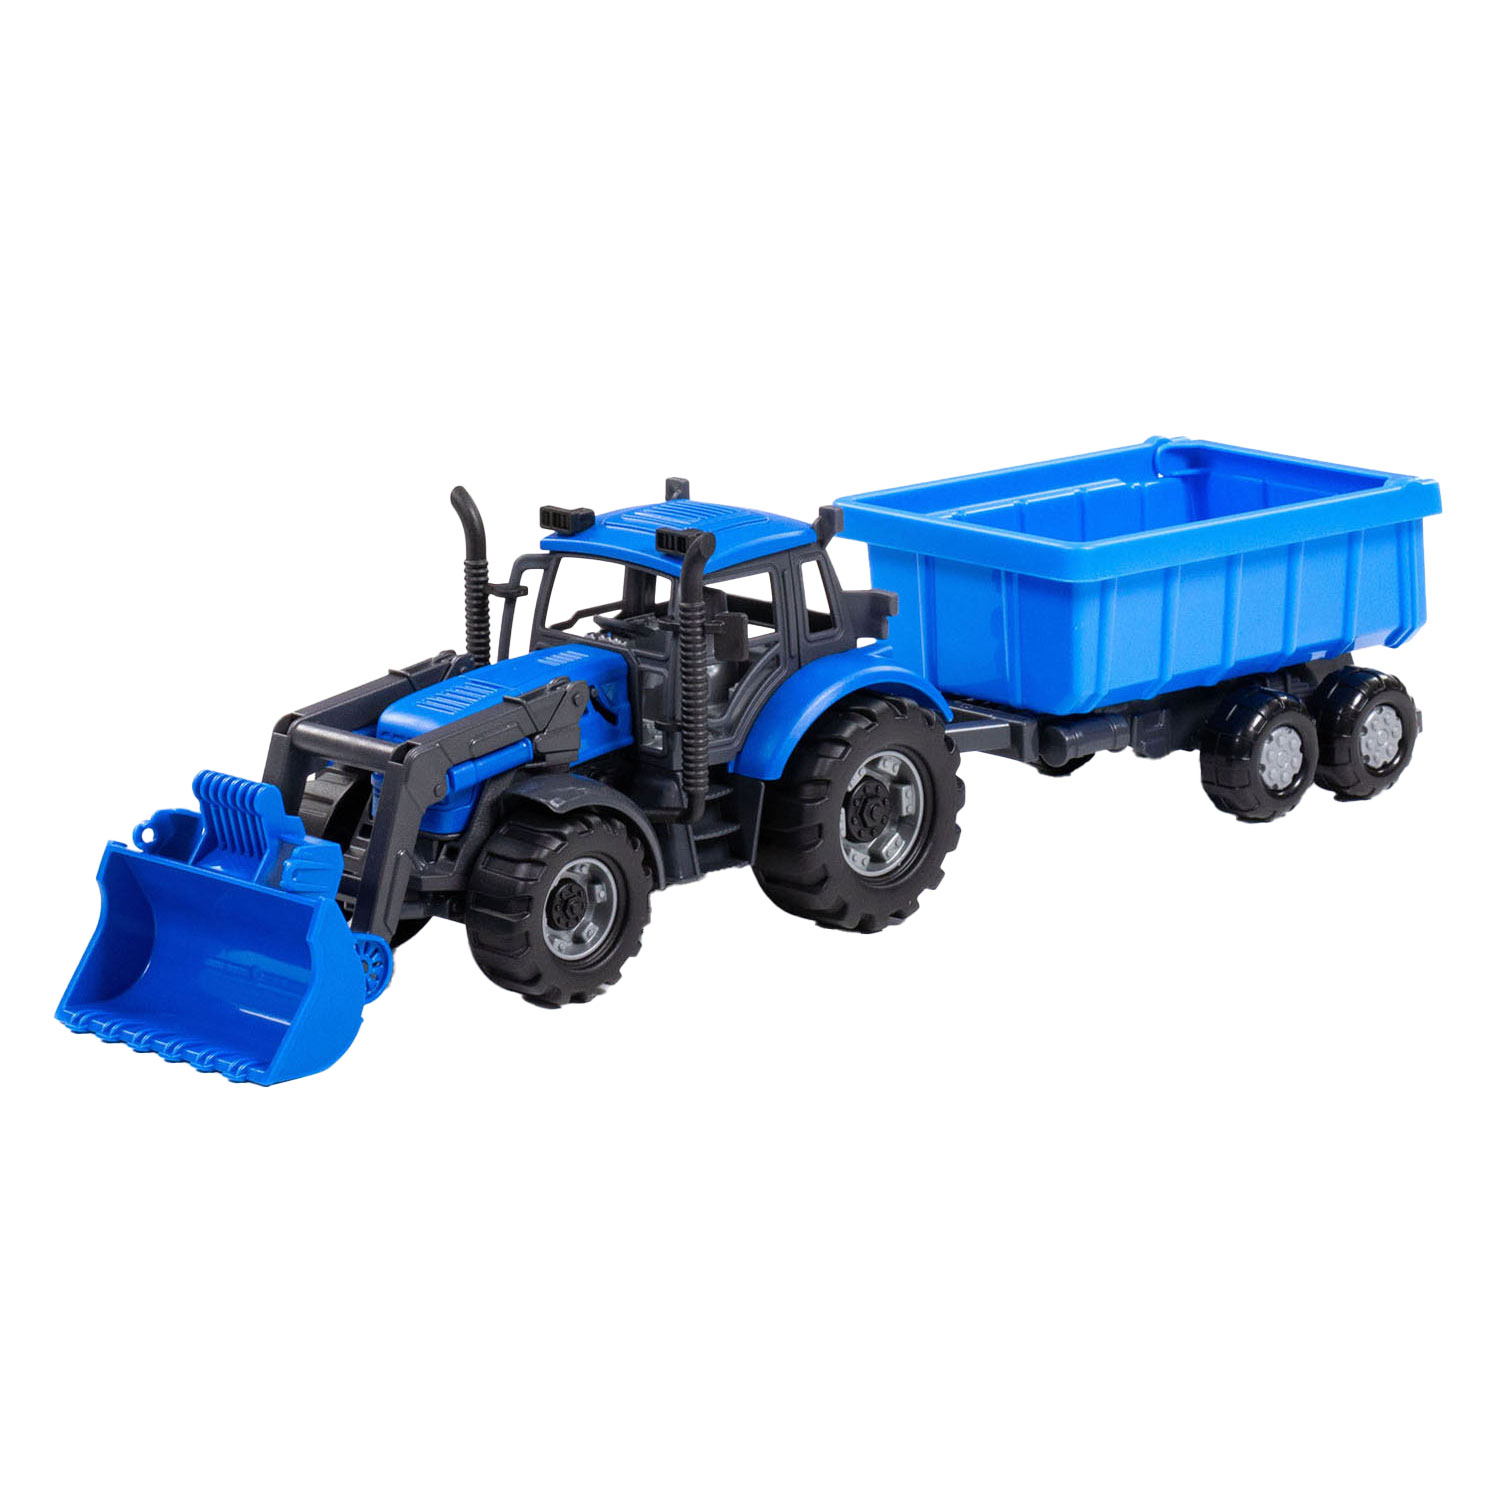 Tracteur Cavallino avec chargeur et remorque benne basculante bleu, échelle 1:32